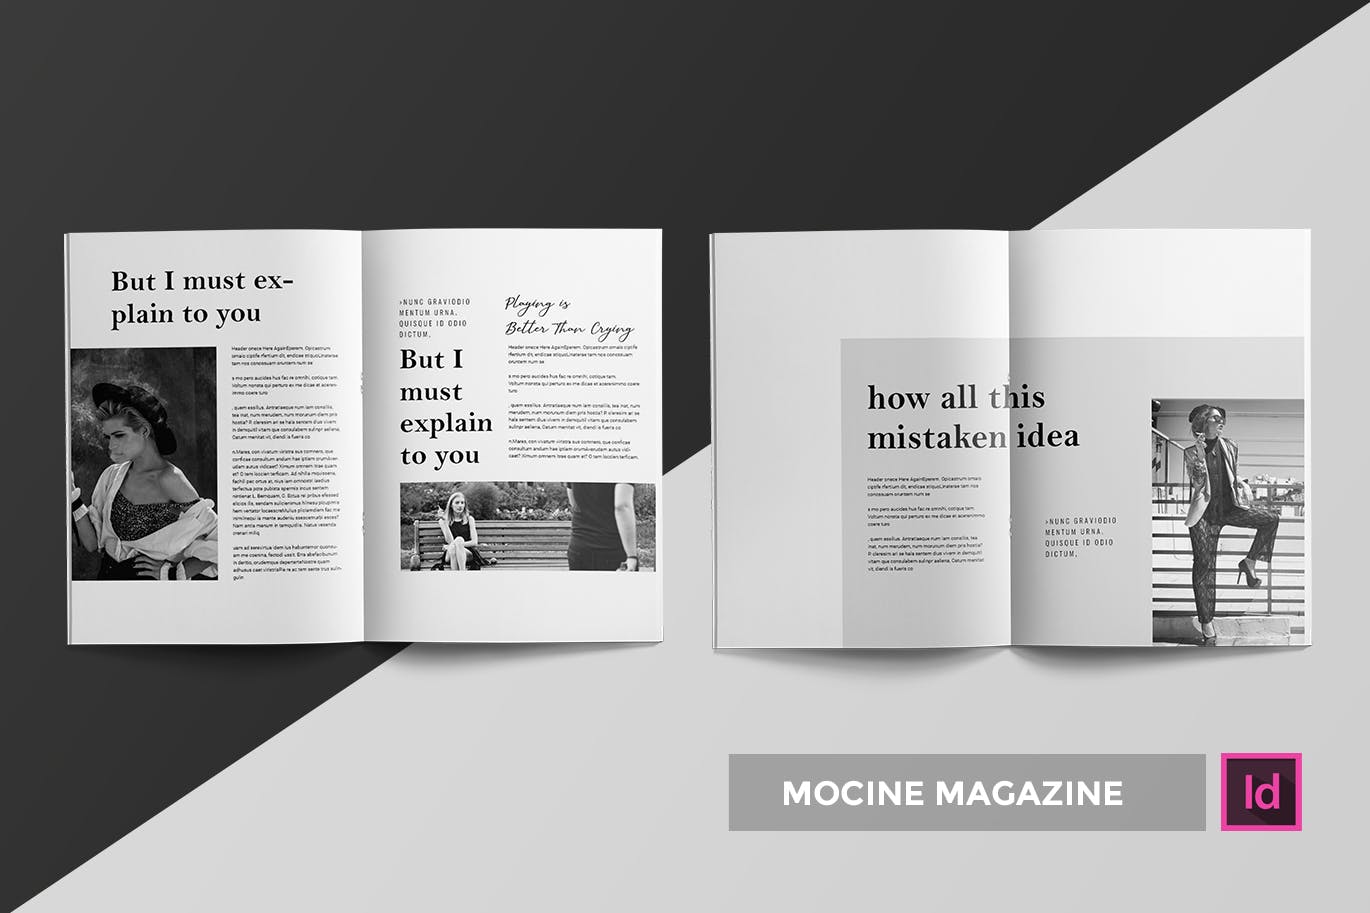 高端人物/摄影/时尚主题16图库精选杂志版式排版设计INDD模板 Mocine | Magazine Template插图(1)